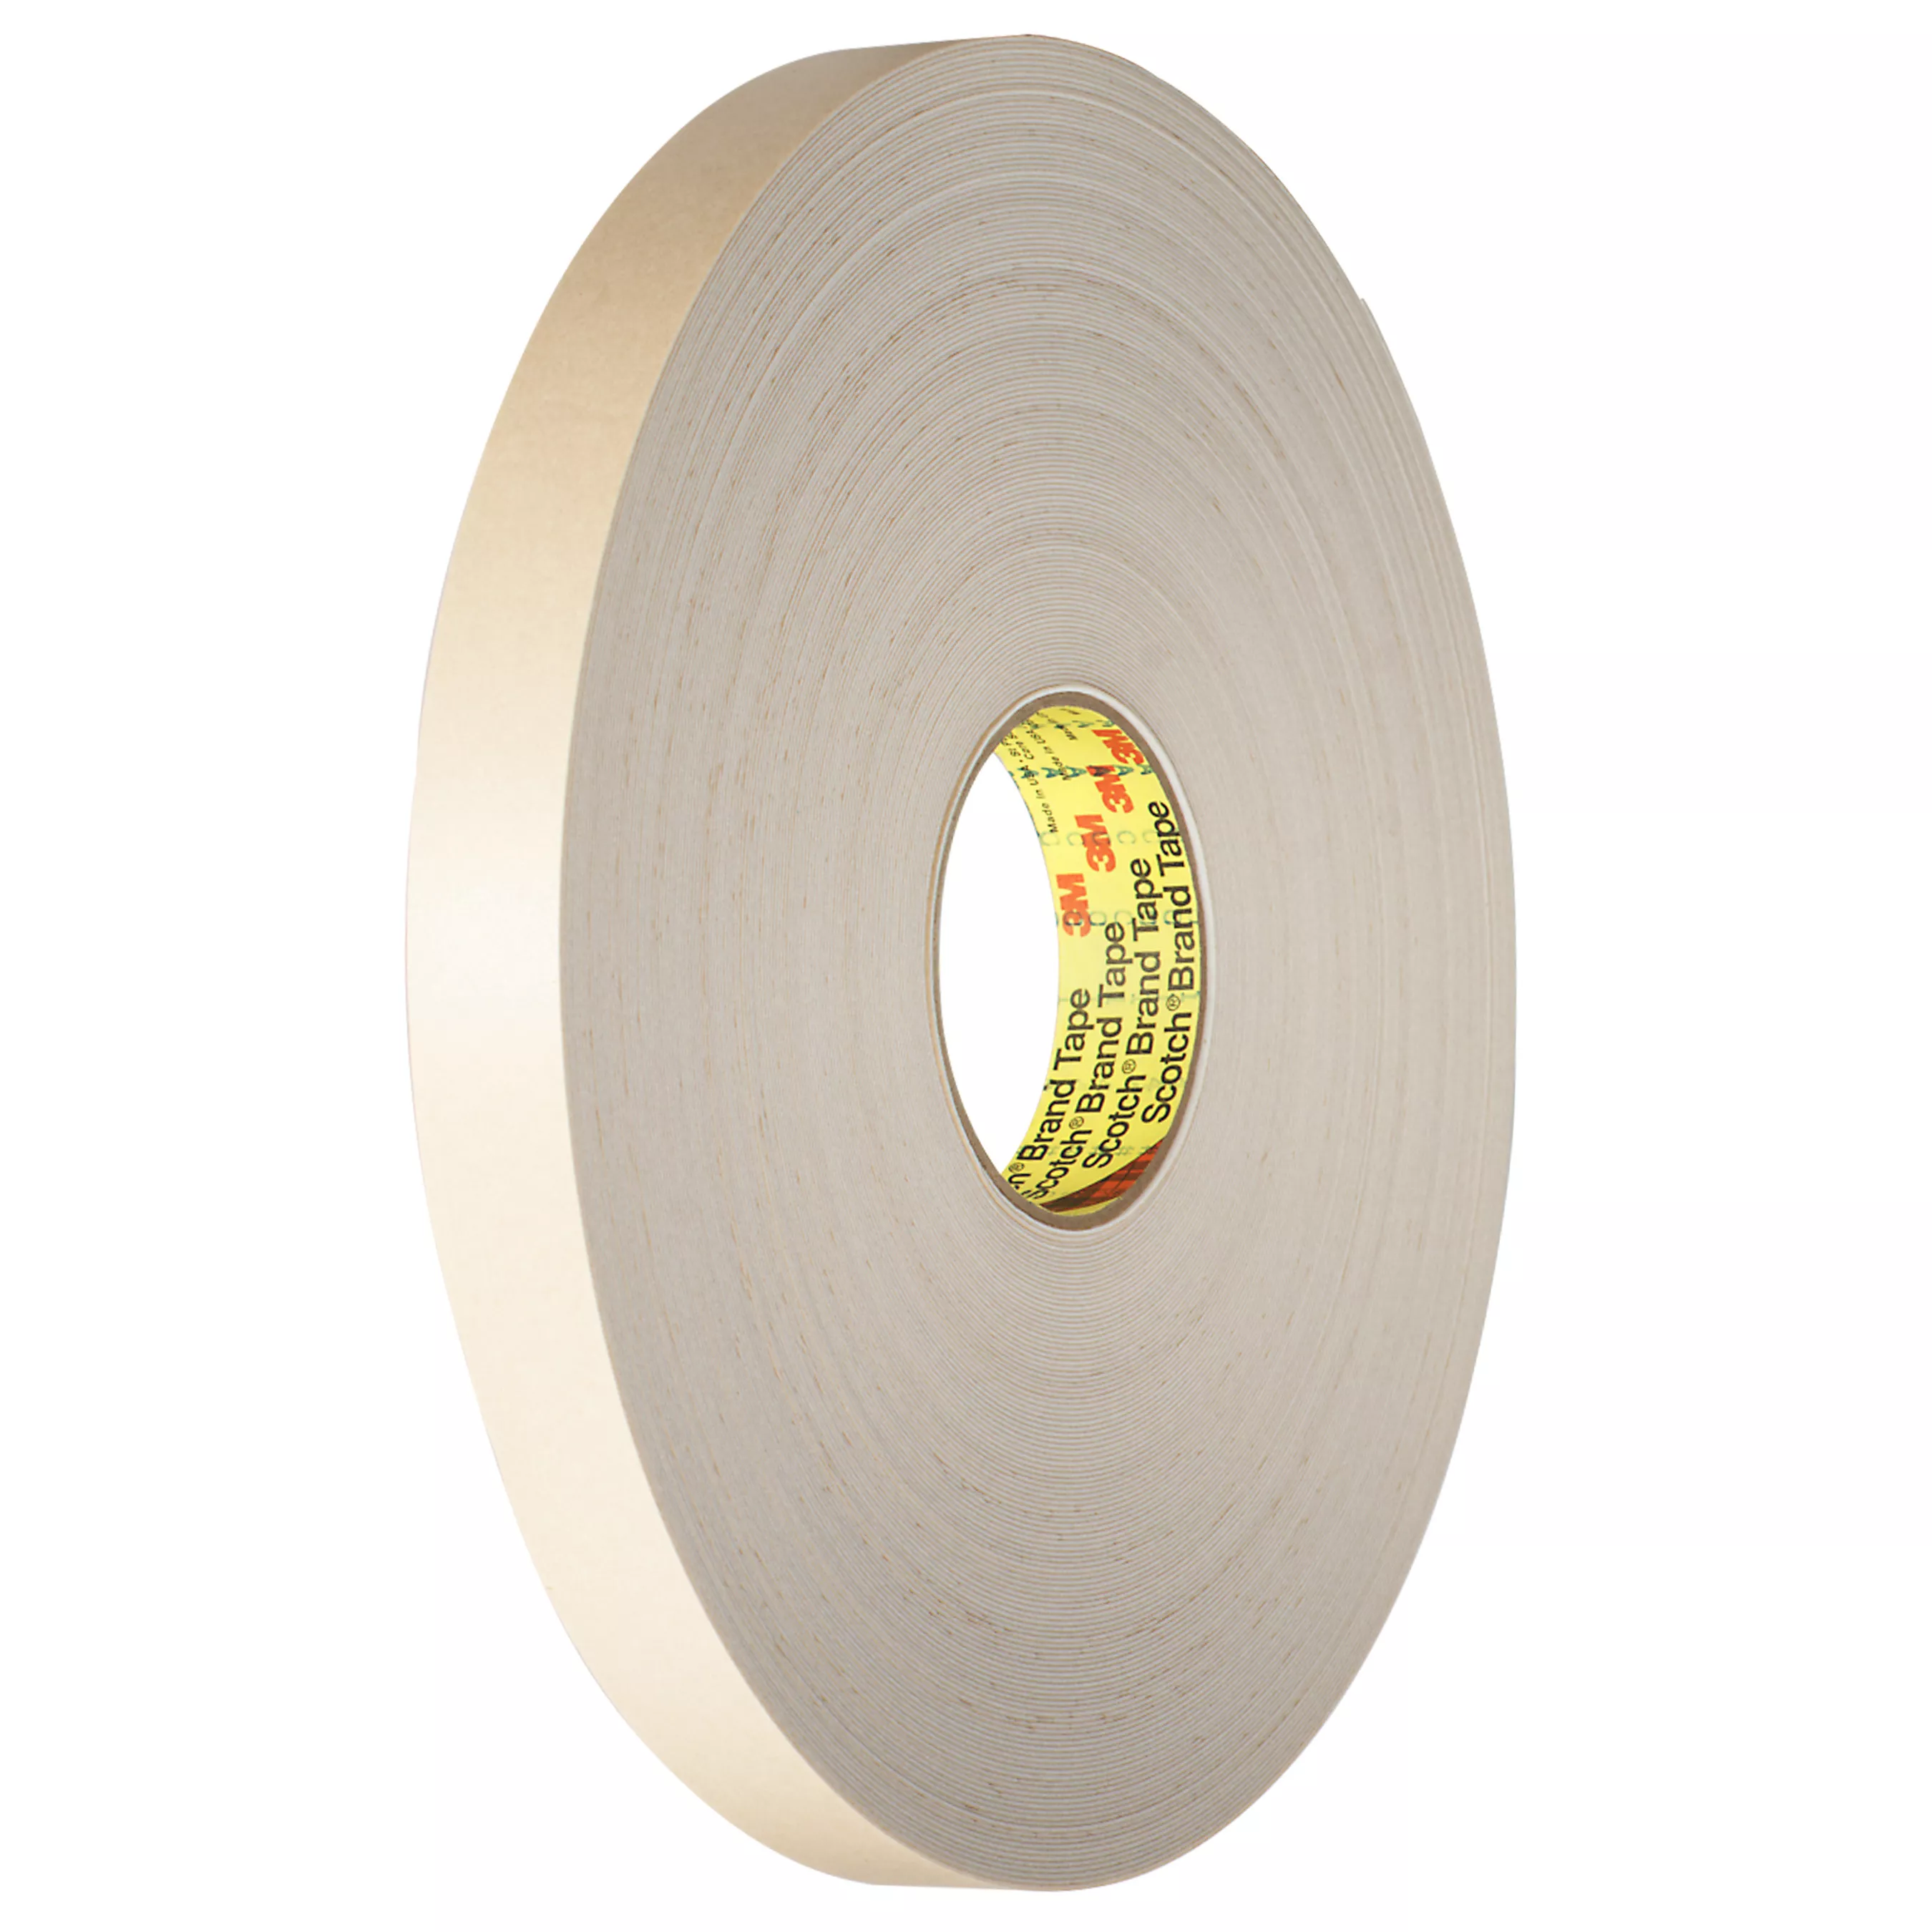 3M™ Double Coated Polyethylene Foam Tape 4492W, White, 1 1/2 in x 72 yd,
31 mil, 6 Roll/Case